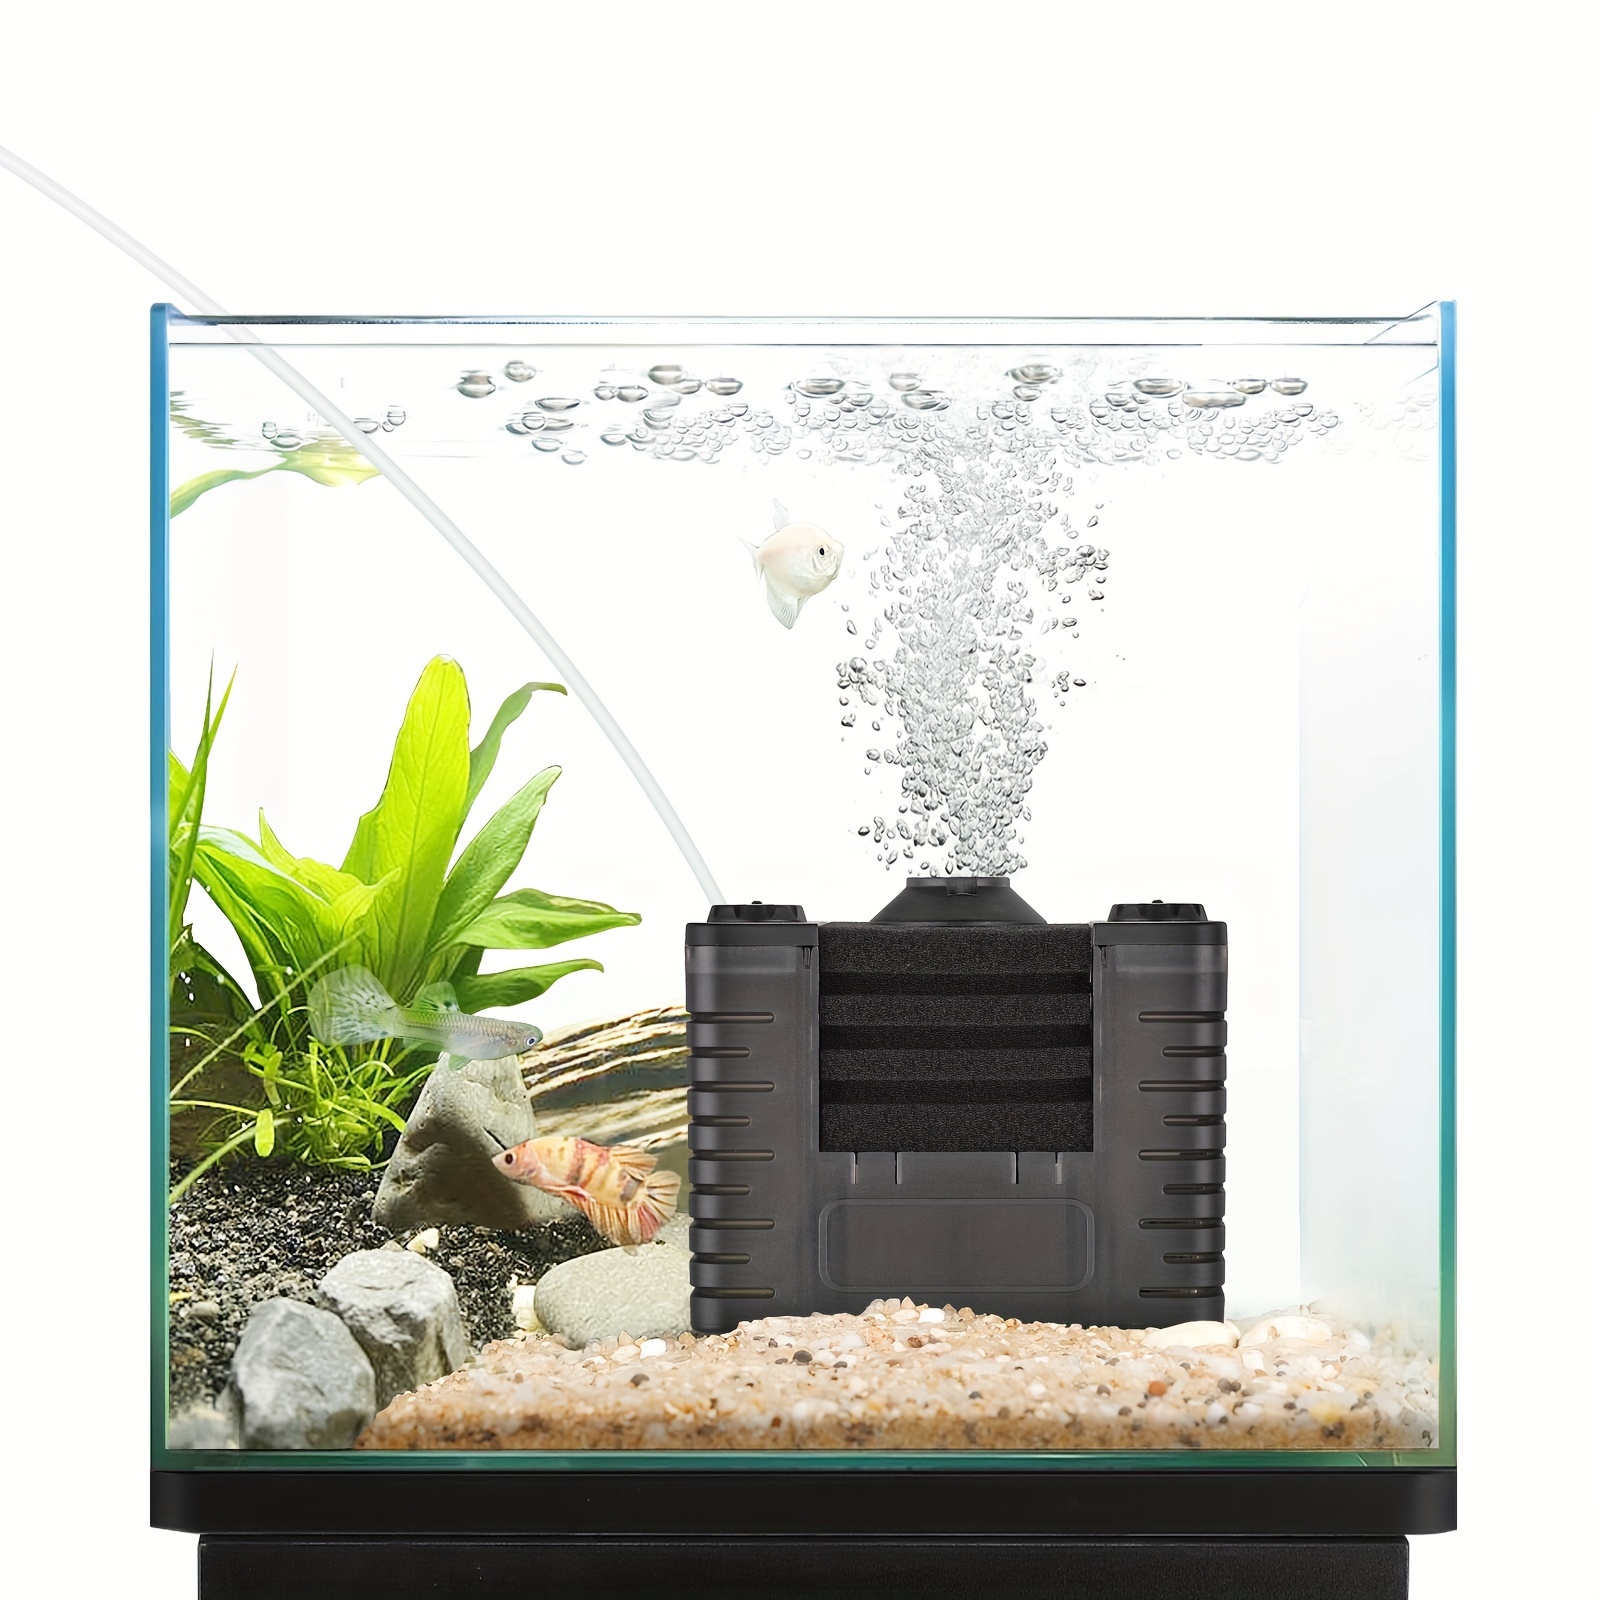 Mini-Wasserpumpe, wasserdicht, 600 l/h, 10 W, ultra-leise, für Aquarium,  Teich, Aquarium, Süßwasserversorgung und Zirkulation von Meerwasser